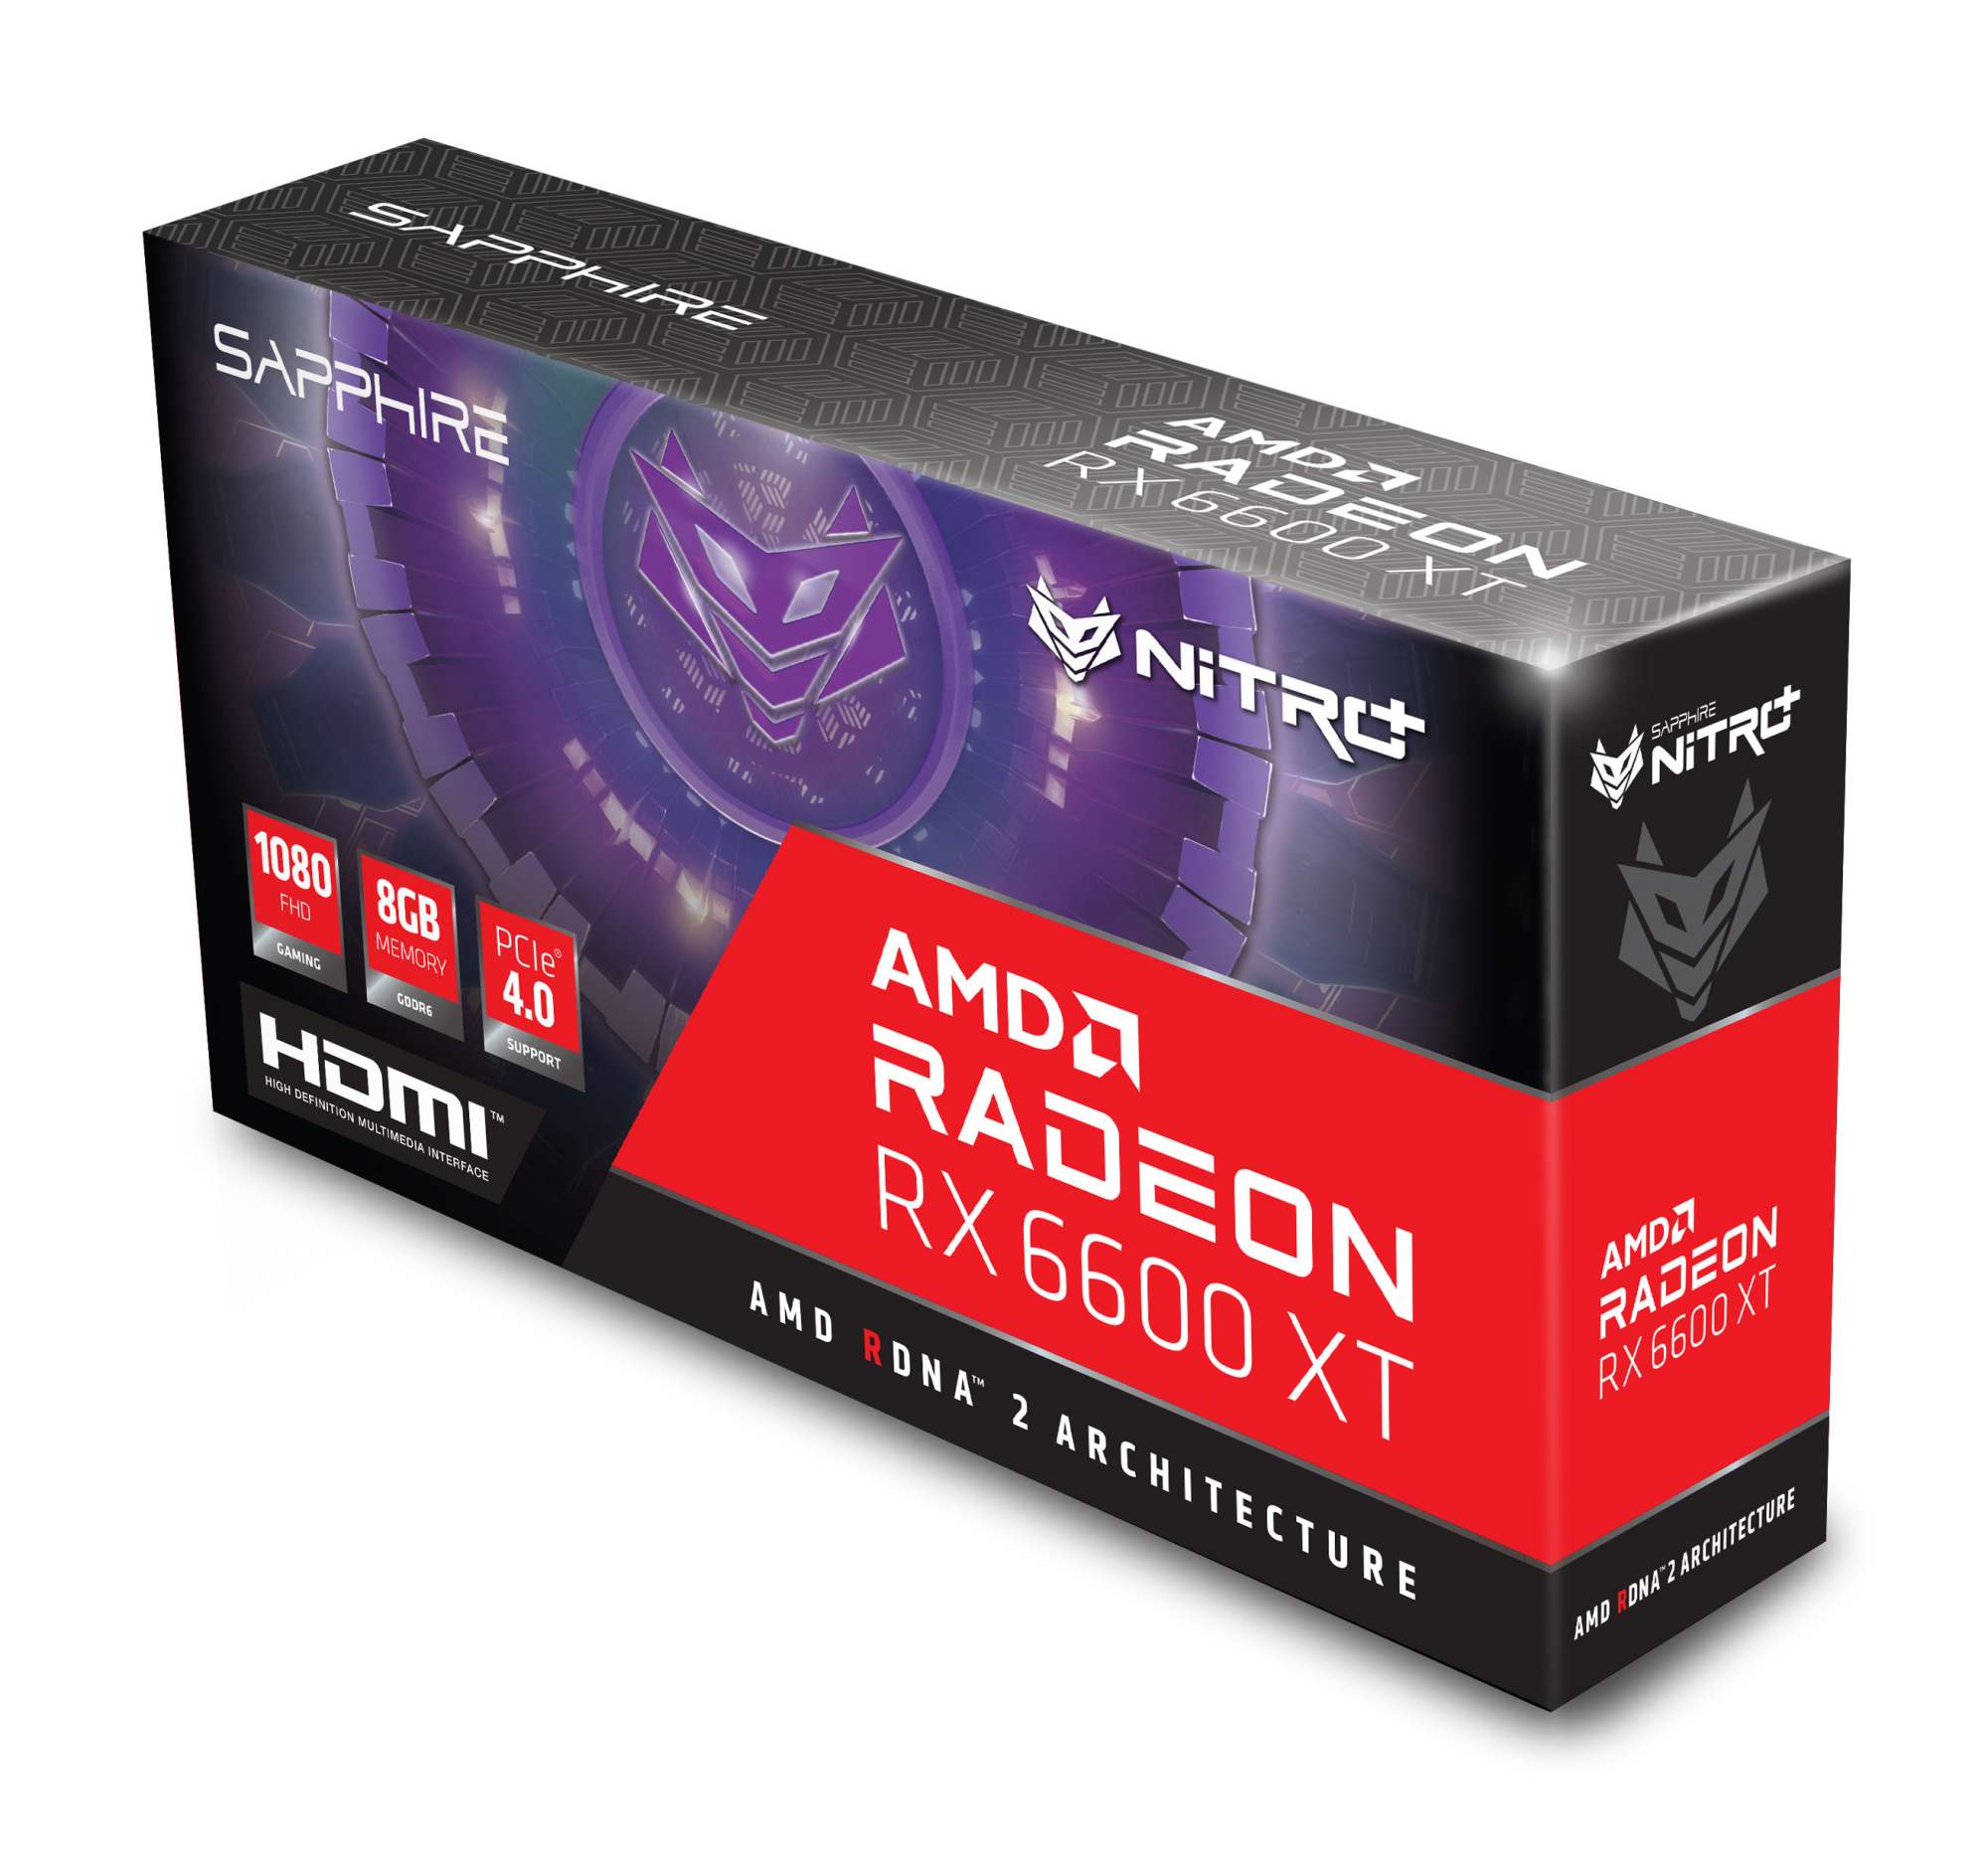 Видеокарта Sapphire AMD Radeon RX 6600XT Gaming OC NITRO+ (11309-01-20G),  купить в Москве, цены в интернет-магазинах на sbermegamarket.ru